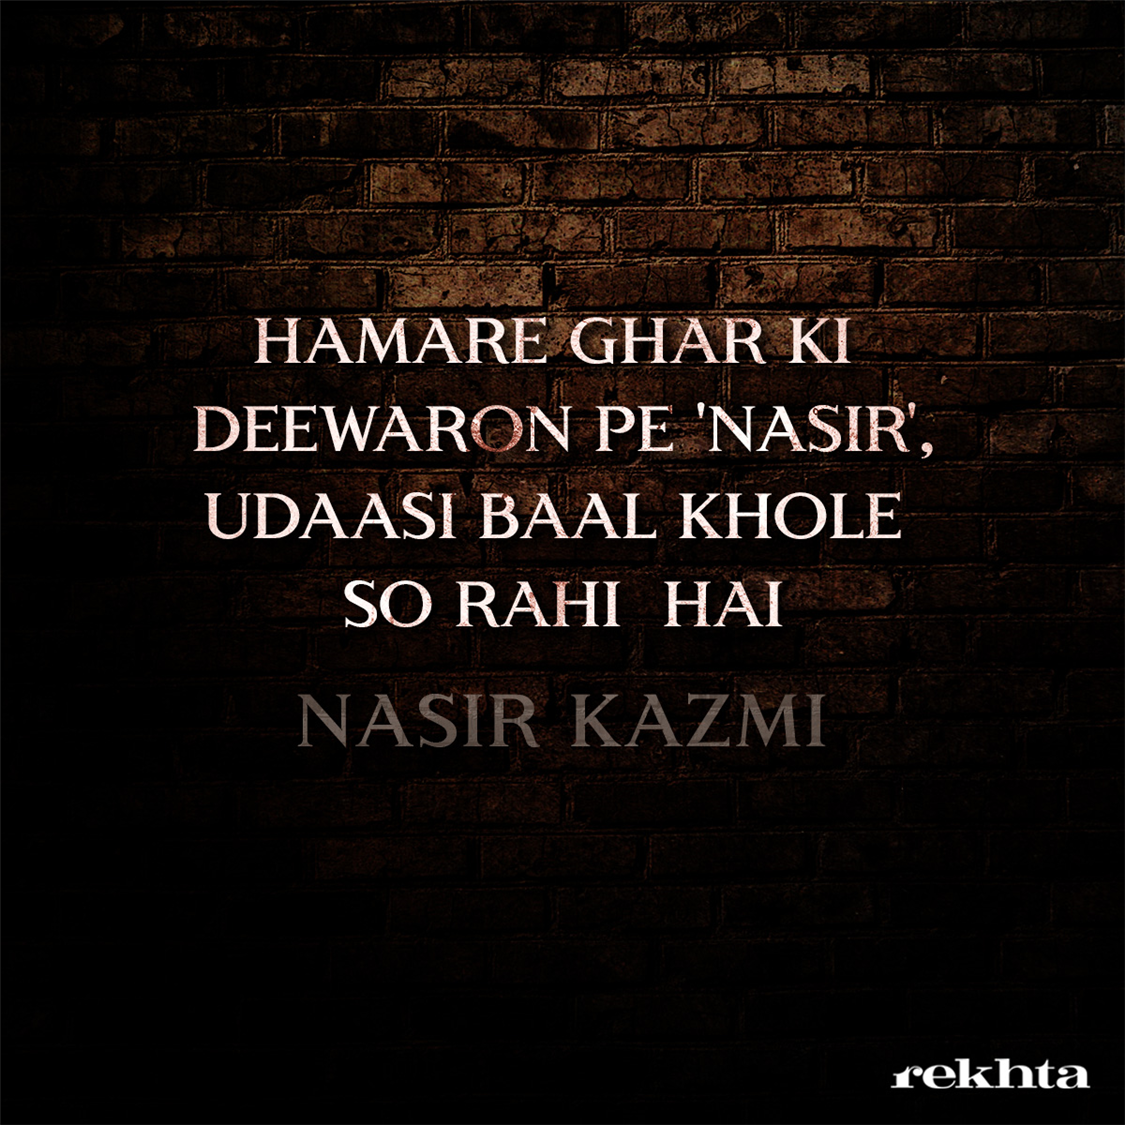 ہمارے گھر کی دیواروں پہ ناصرؔ (ردیف .. ے)-ناصر کاظمی